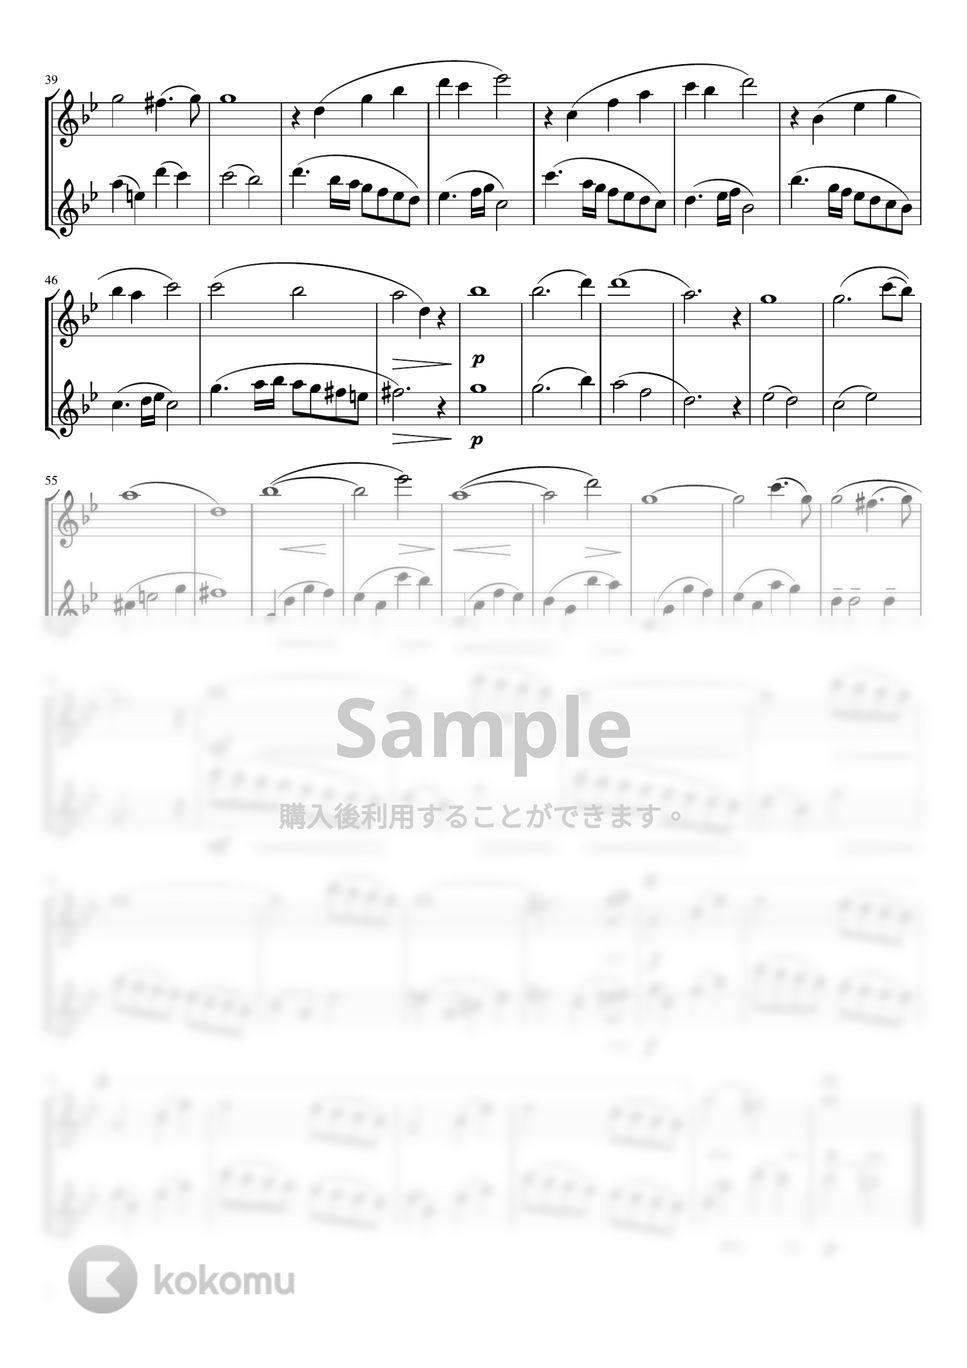 カッチーニ - アベマリア (フルート二重奏/無伴奏・スコア譜) by pfkaori